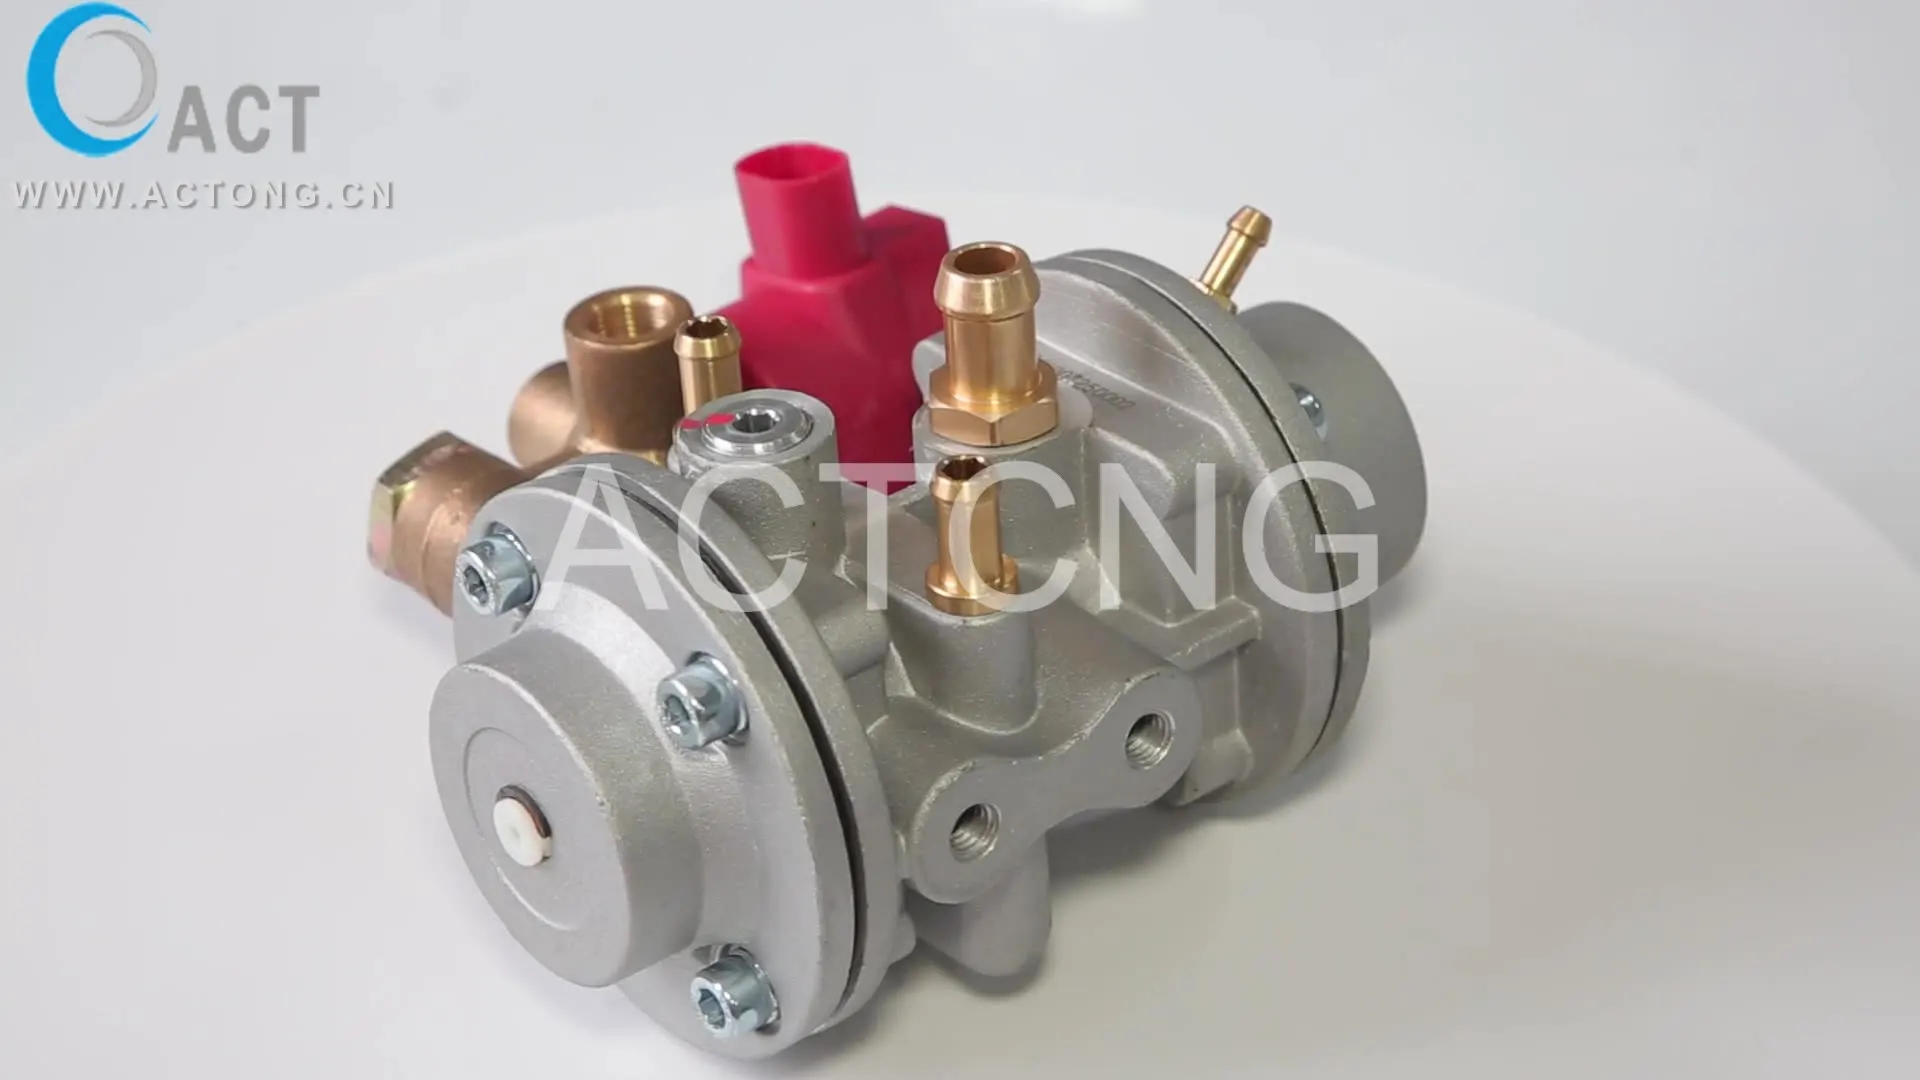 

ACT-B cng регулятор клапана цилиндра системы автогаза электронные редукторы топливные системы cng газовый редуктор